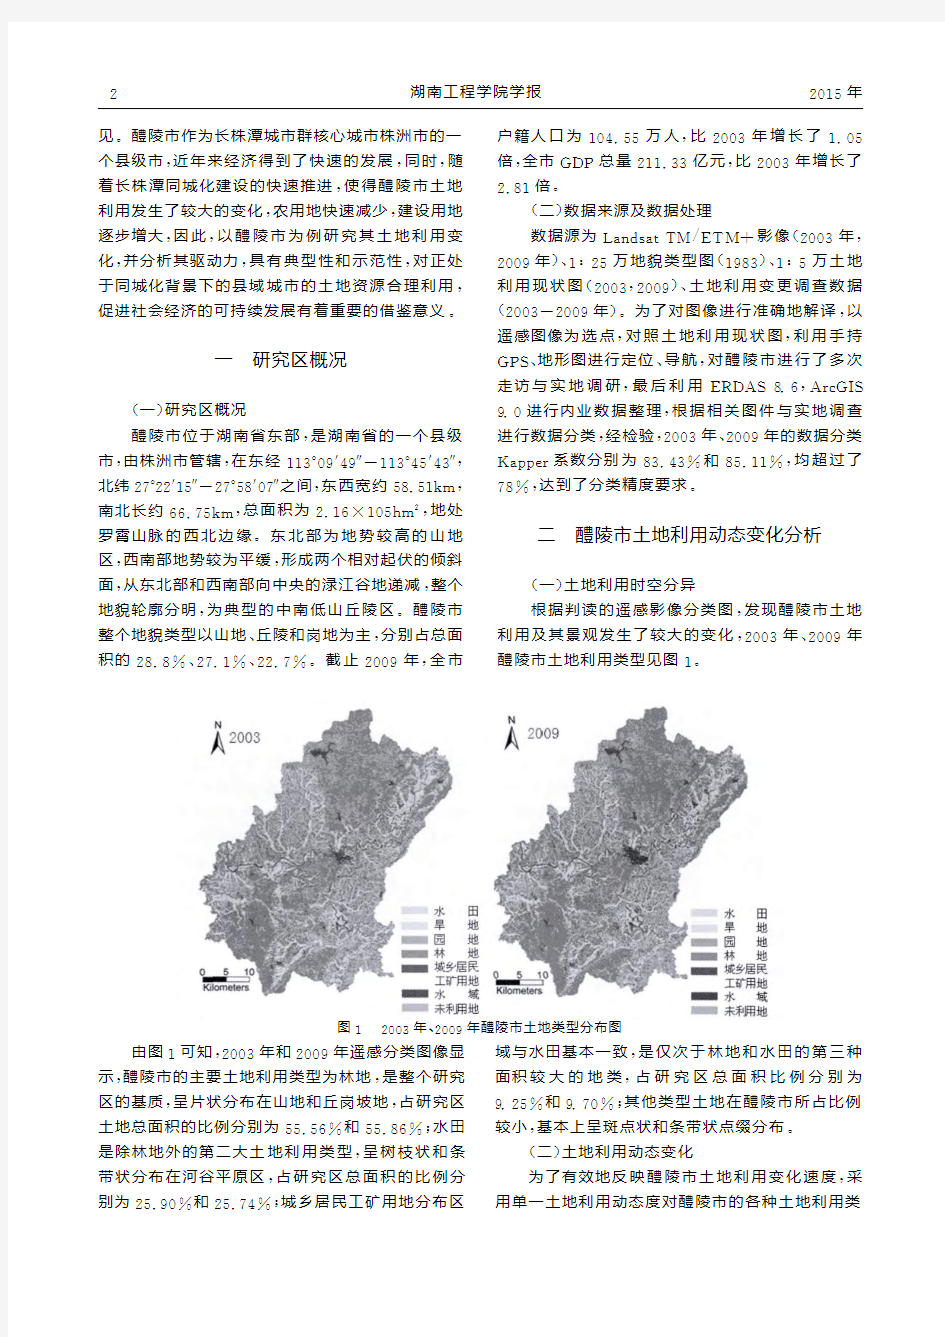 同城化进程中县域土地利用变化及其驱动力分析研究_以湖南省醴陵市为例